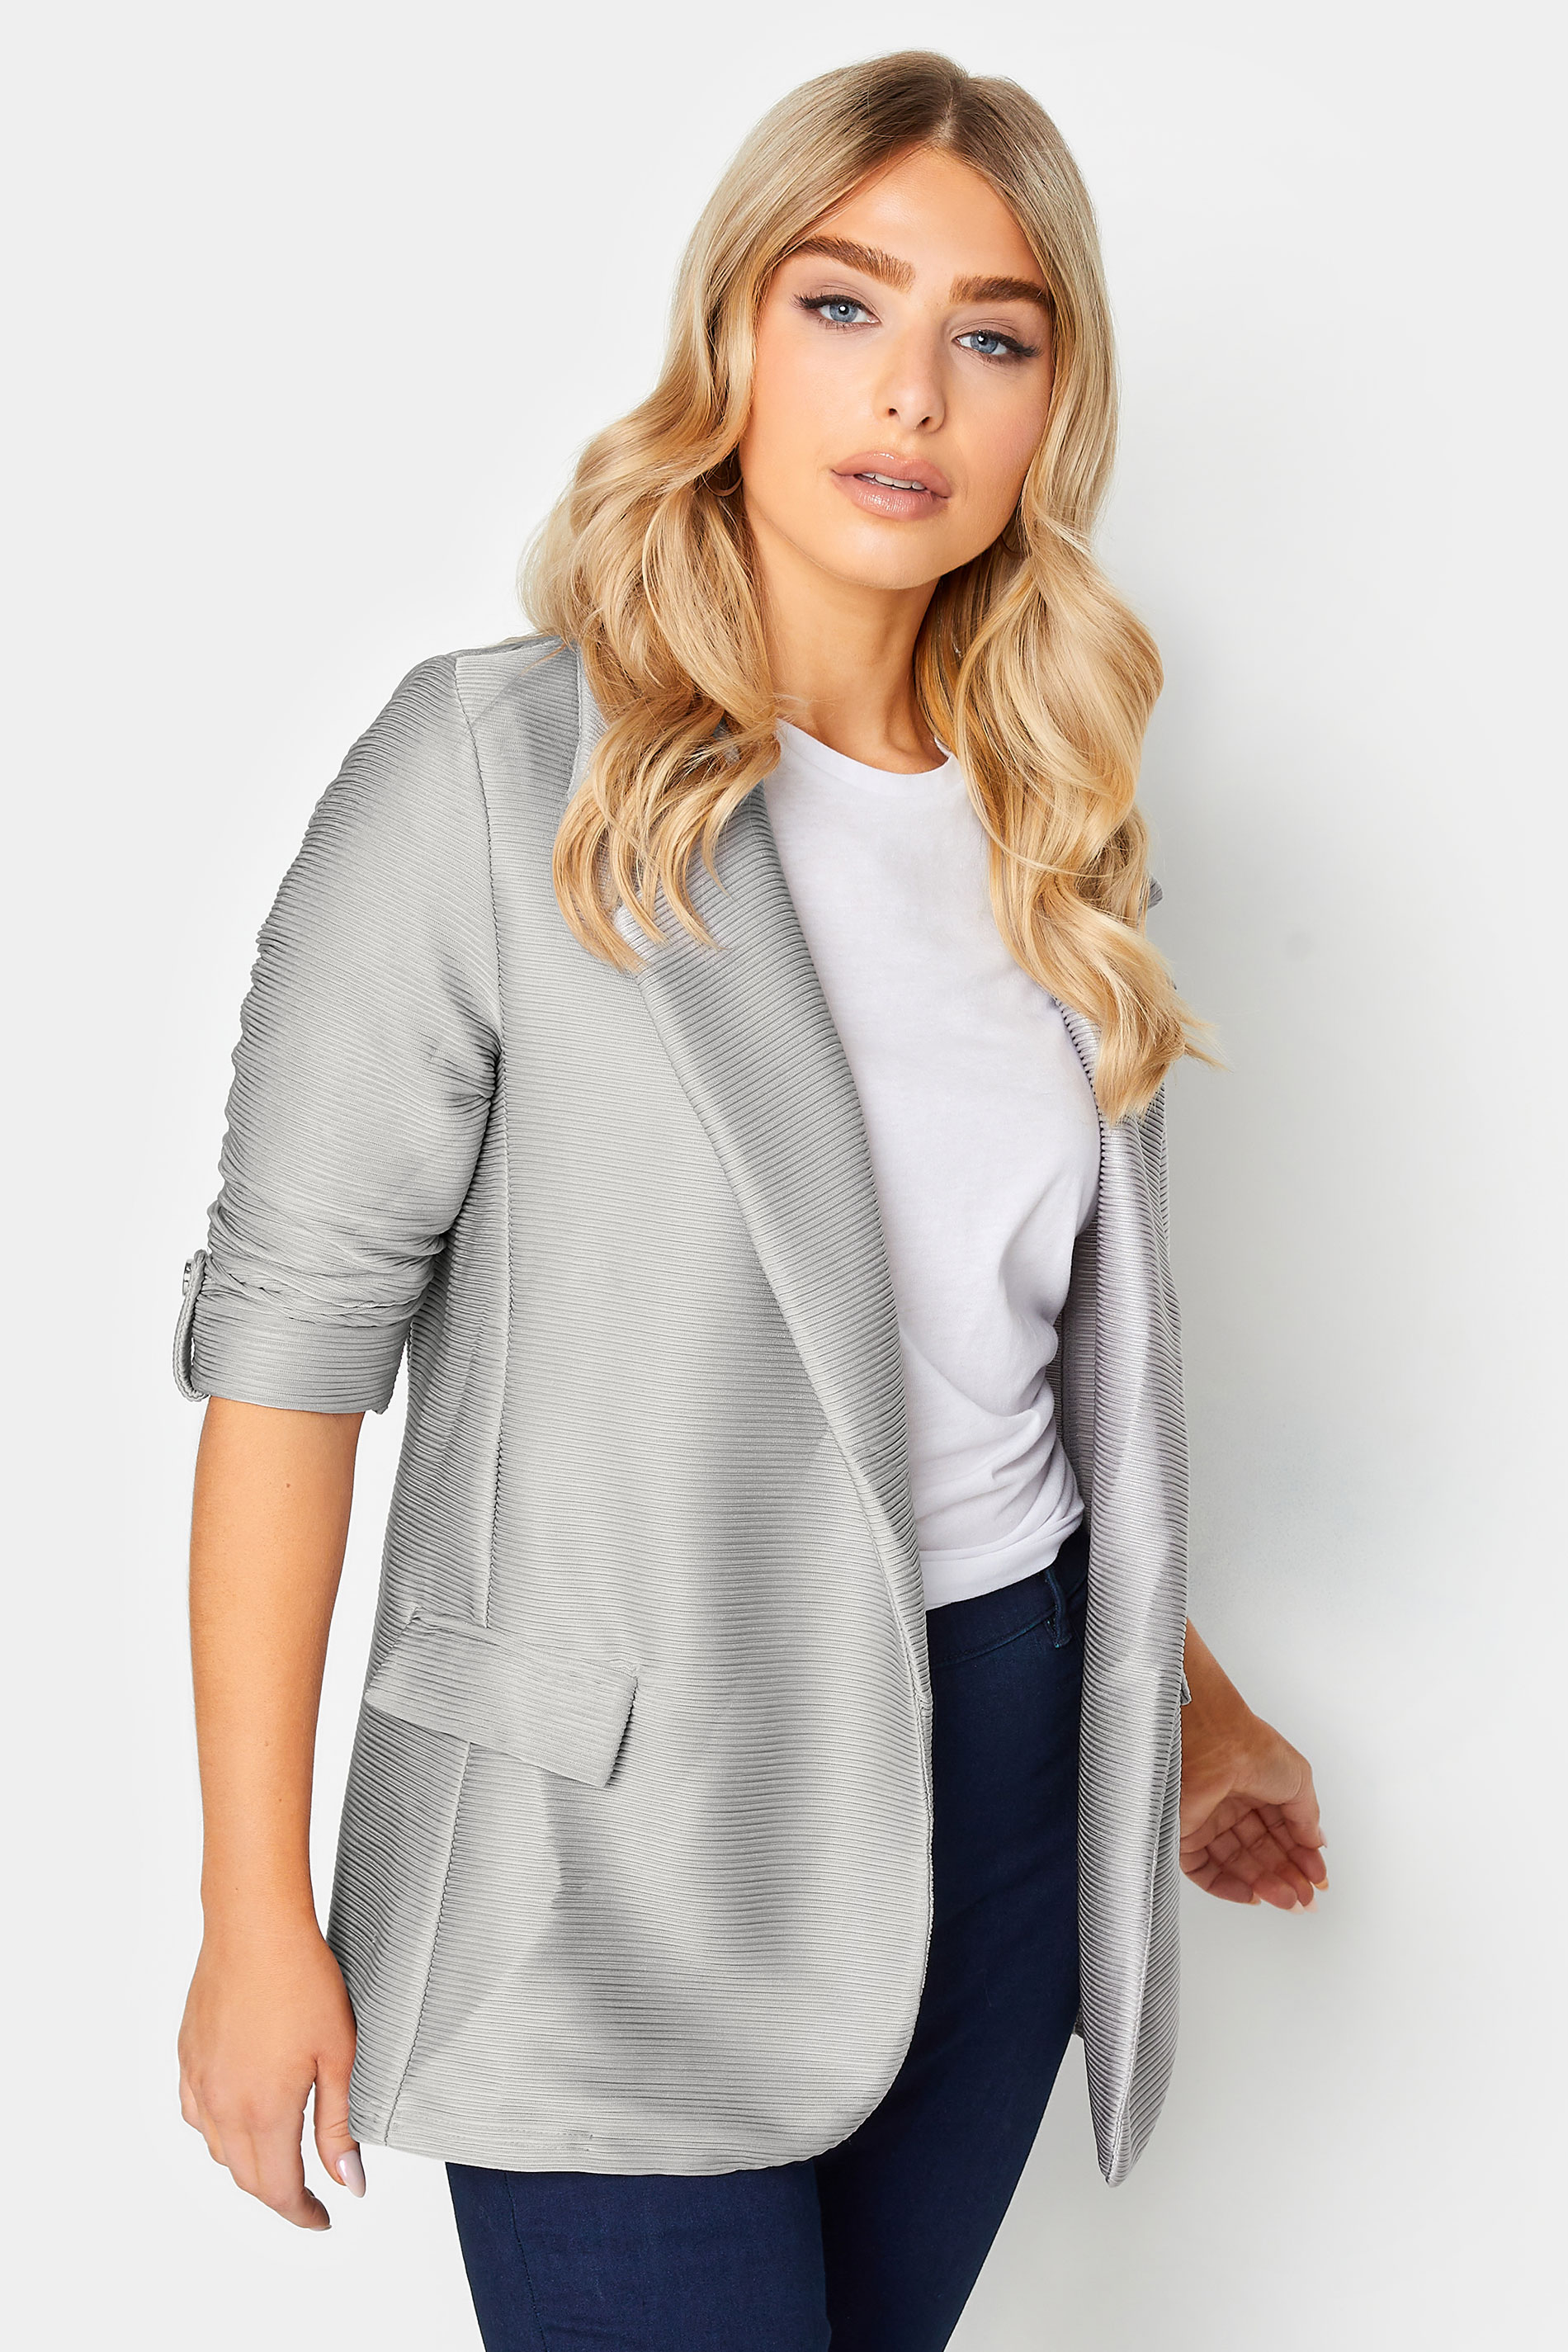 M&Co Grey Textured Blazer | M&Co